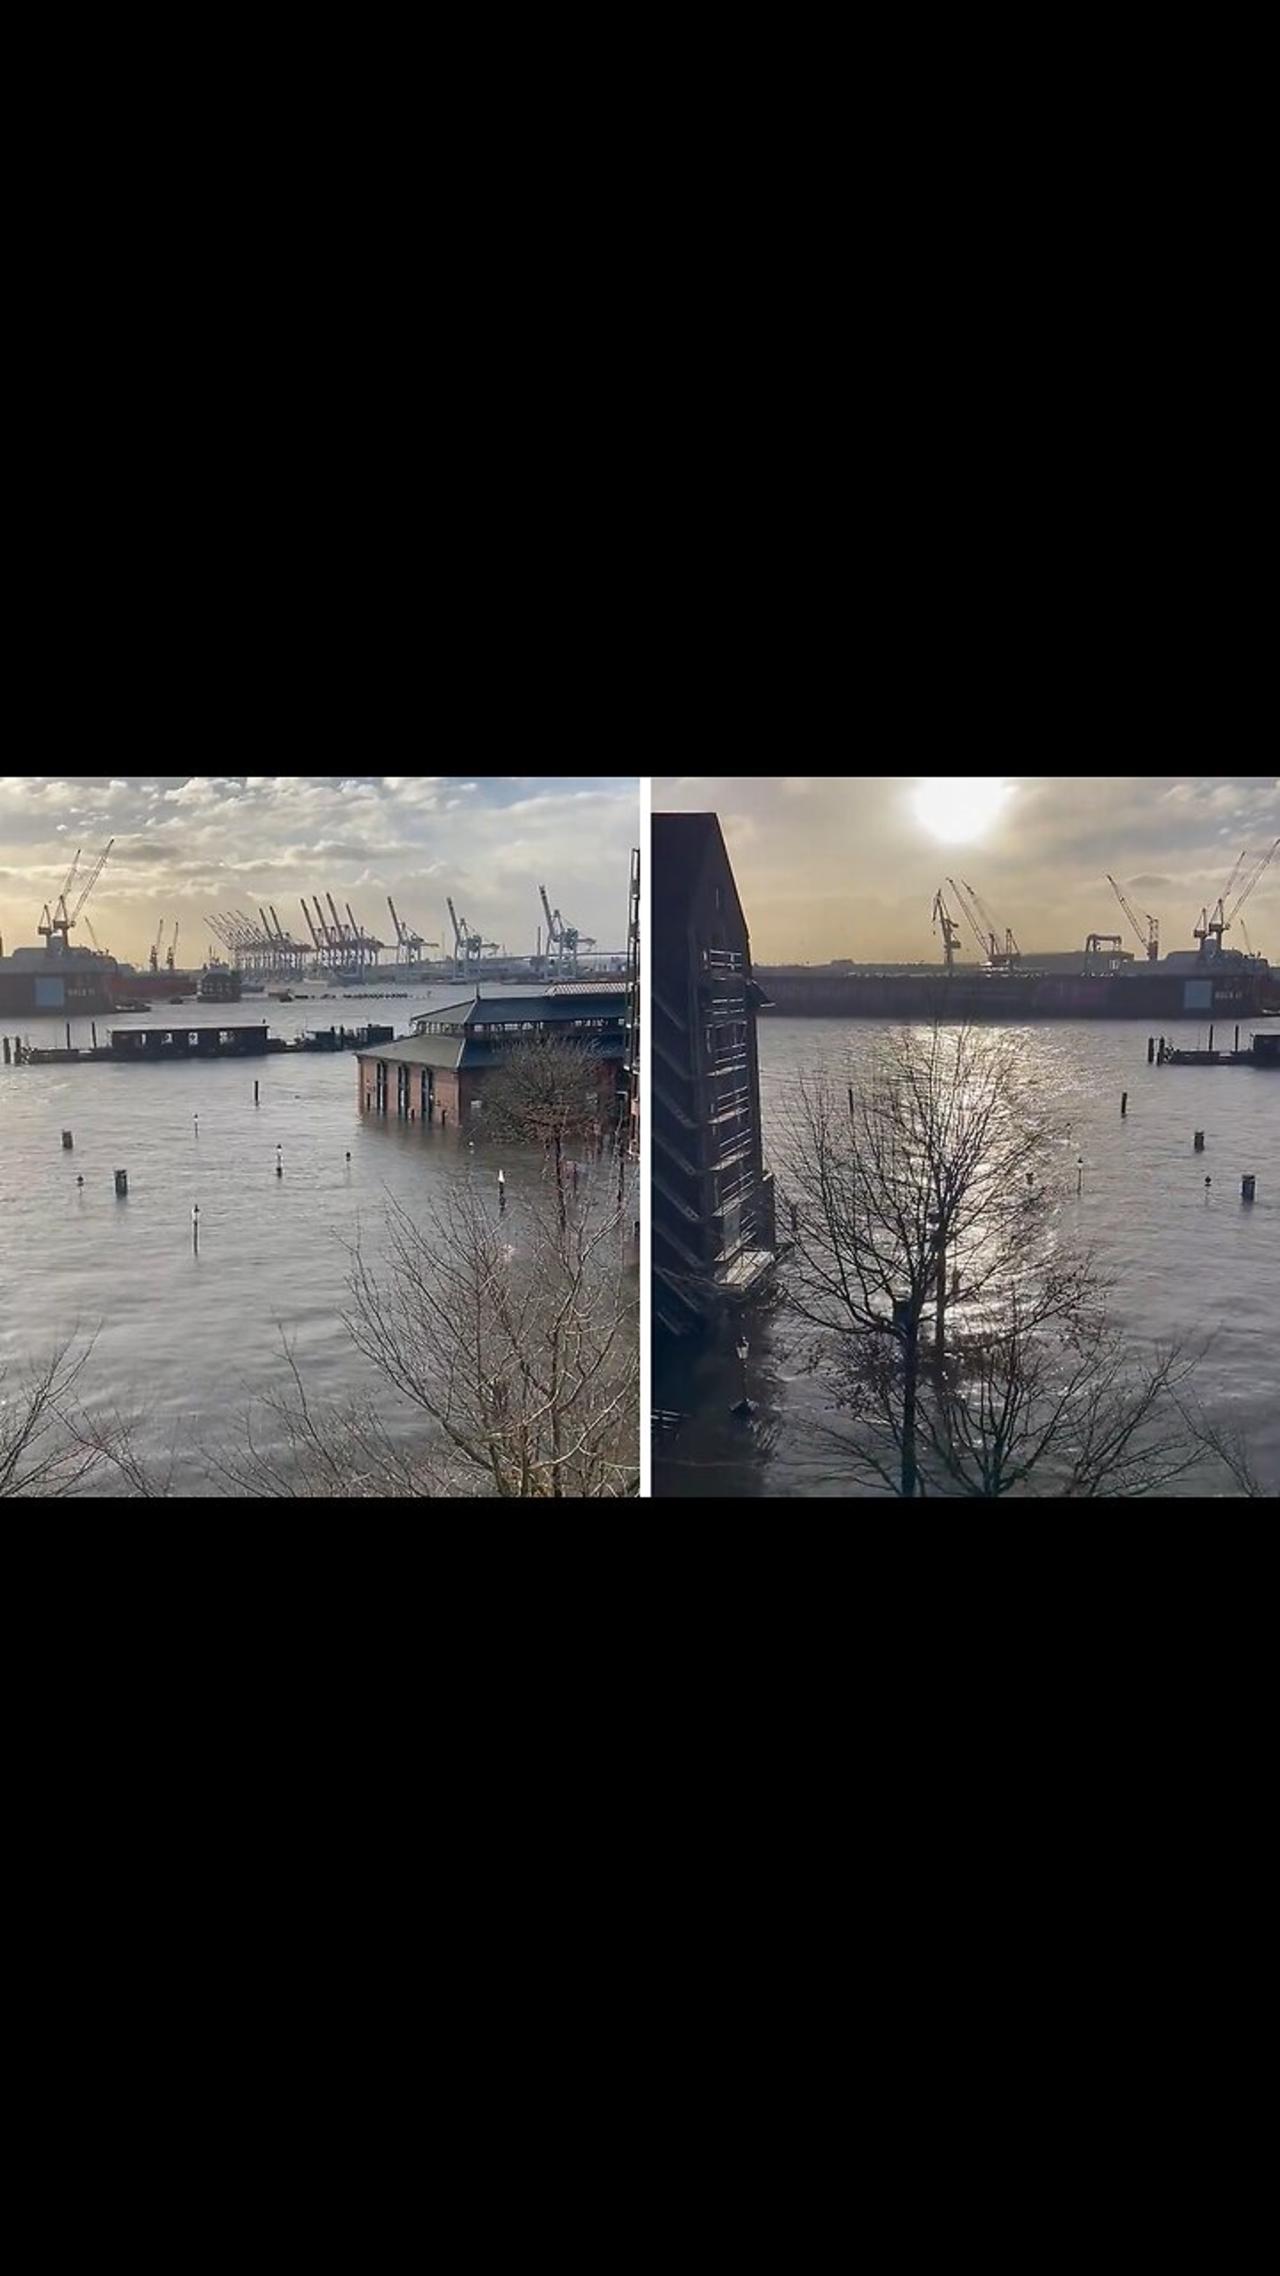 Hamburg, Germany hit by heavy floods